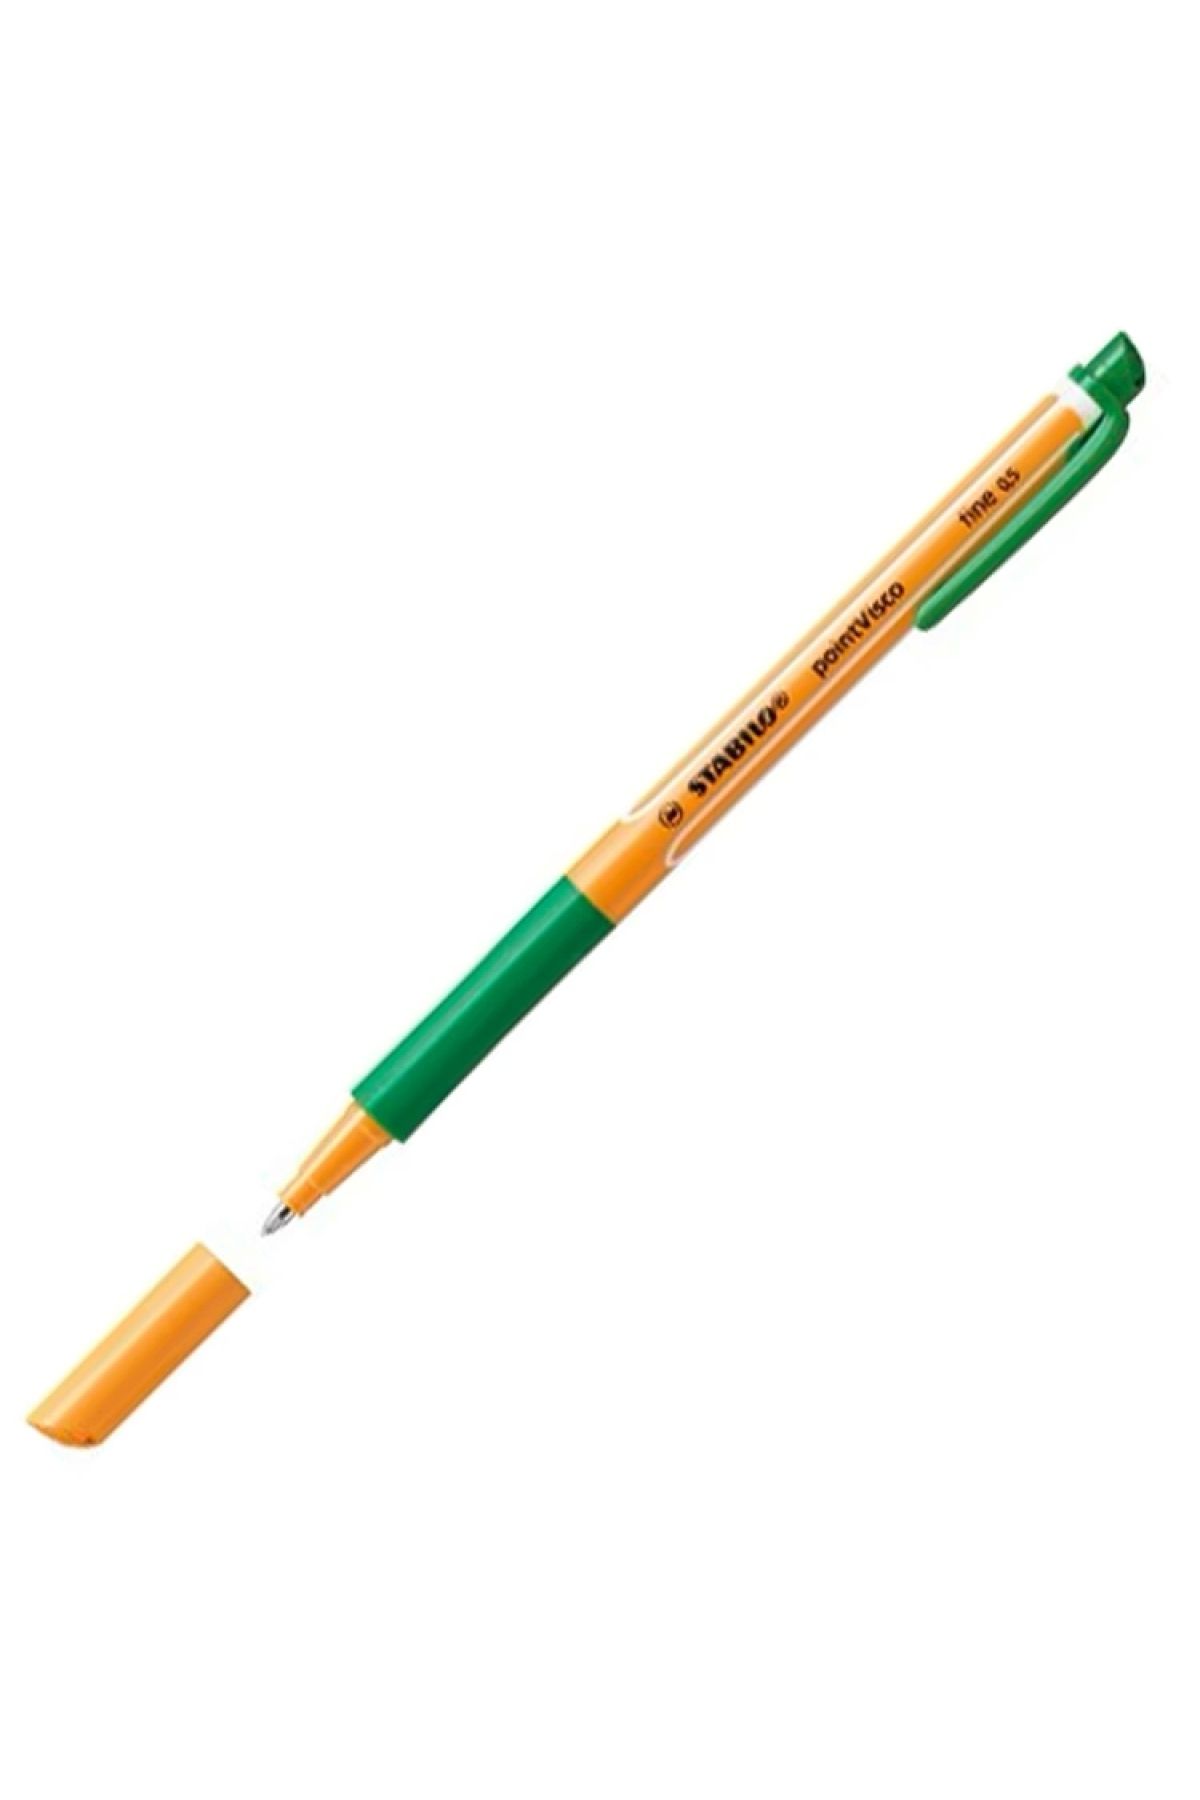 Stabilo Yeşil Stabılo Point Vısco Fıne Tükenmez Kalem 0,5